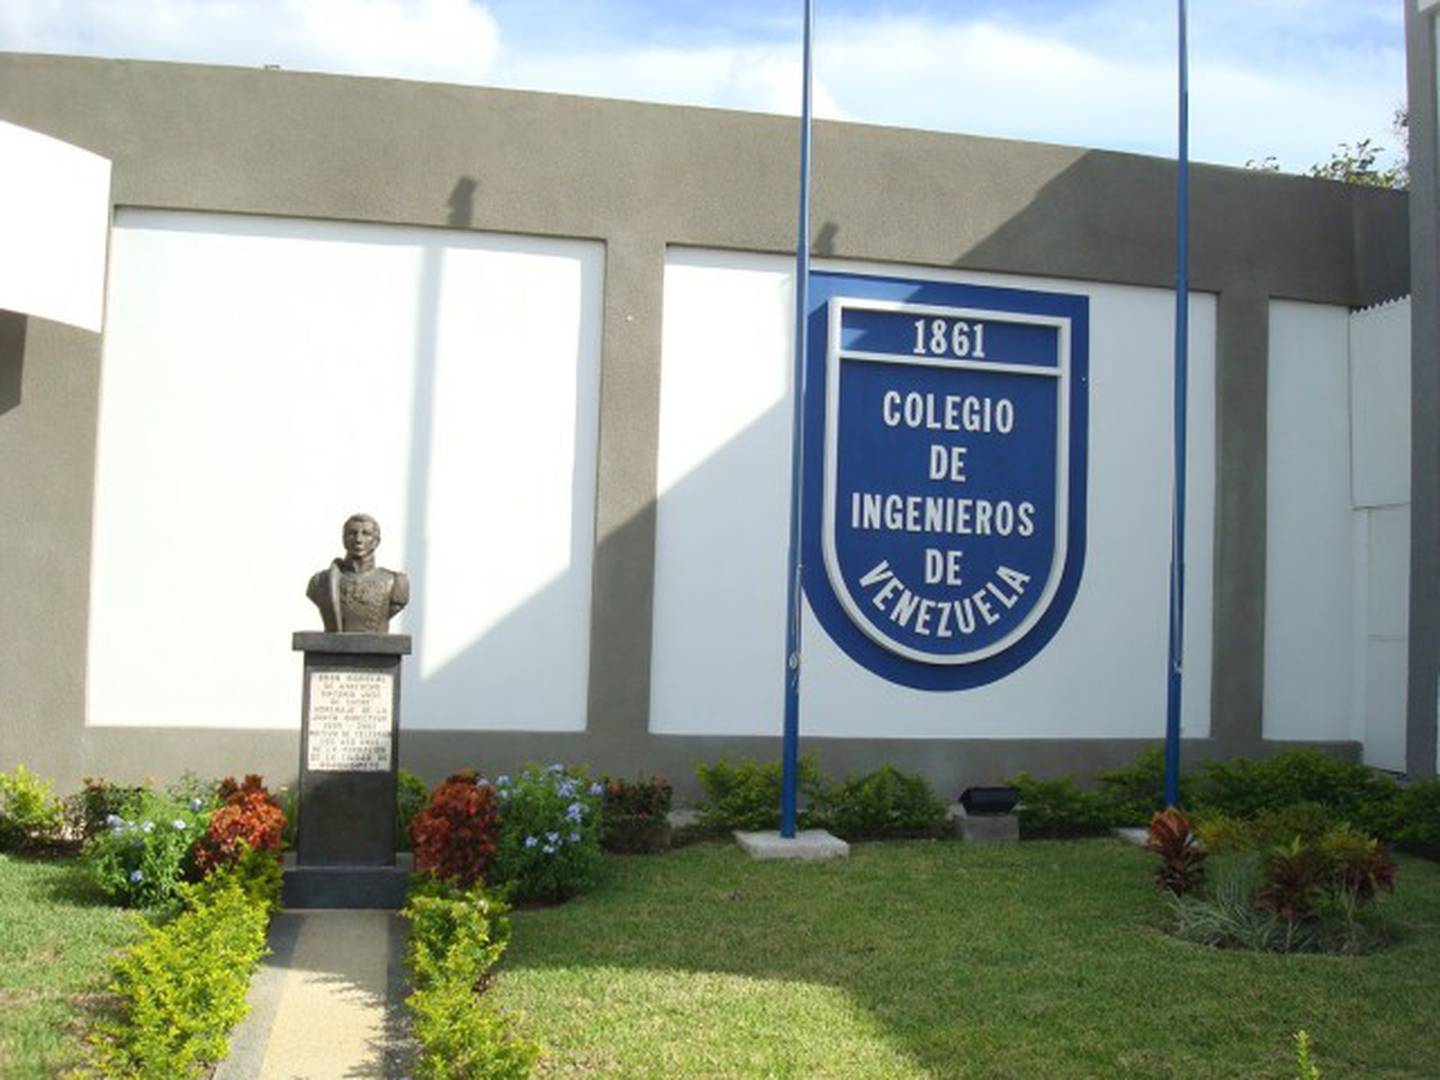 El Colegio de Ingenieros de Venezuela, fundado en 1861